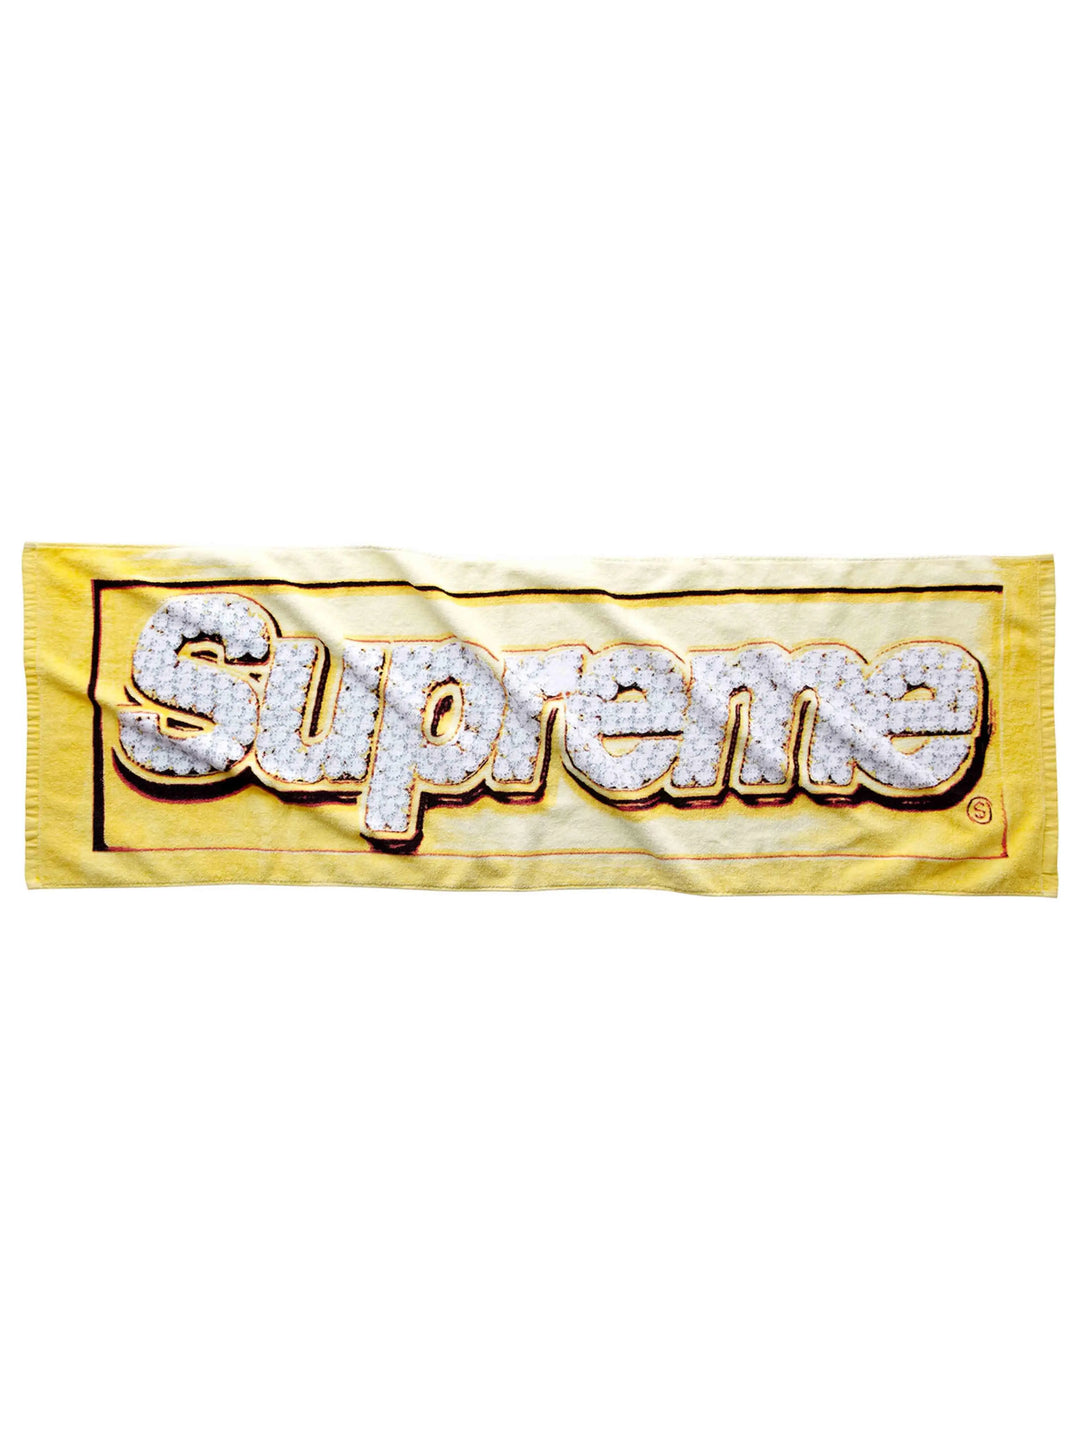 Supreme Bling Towel [SS13] Supreme